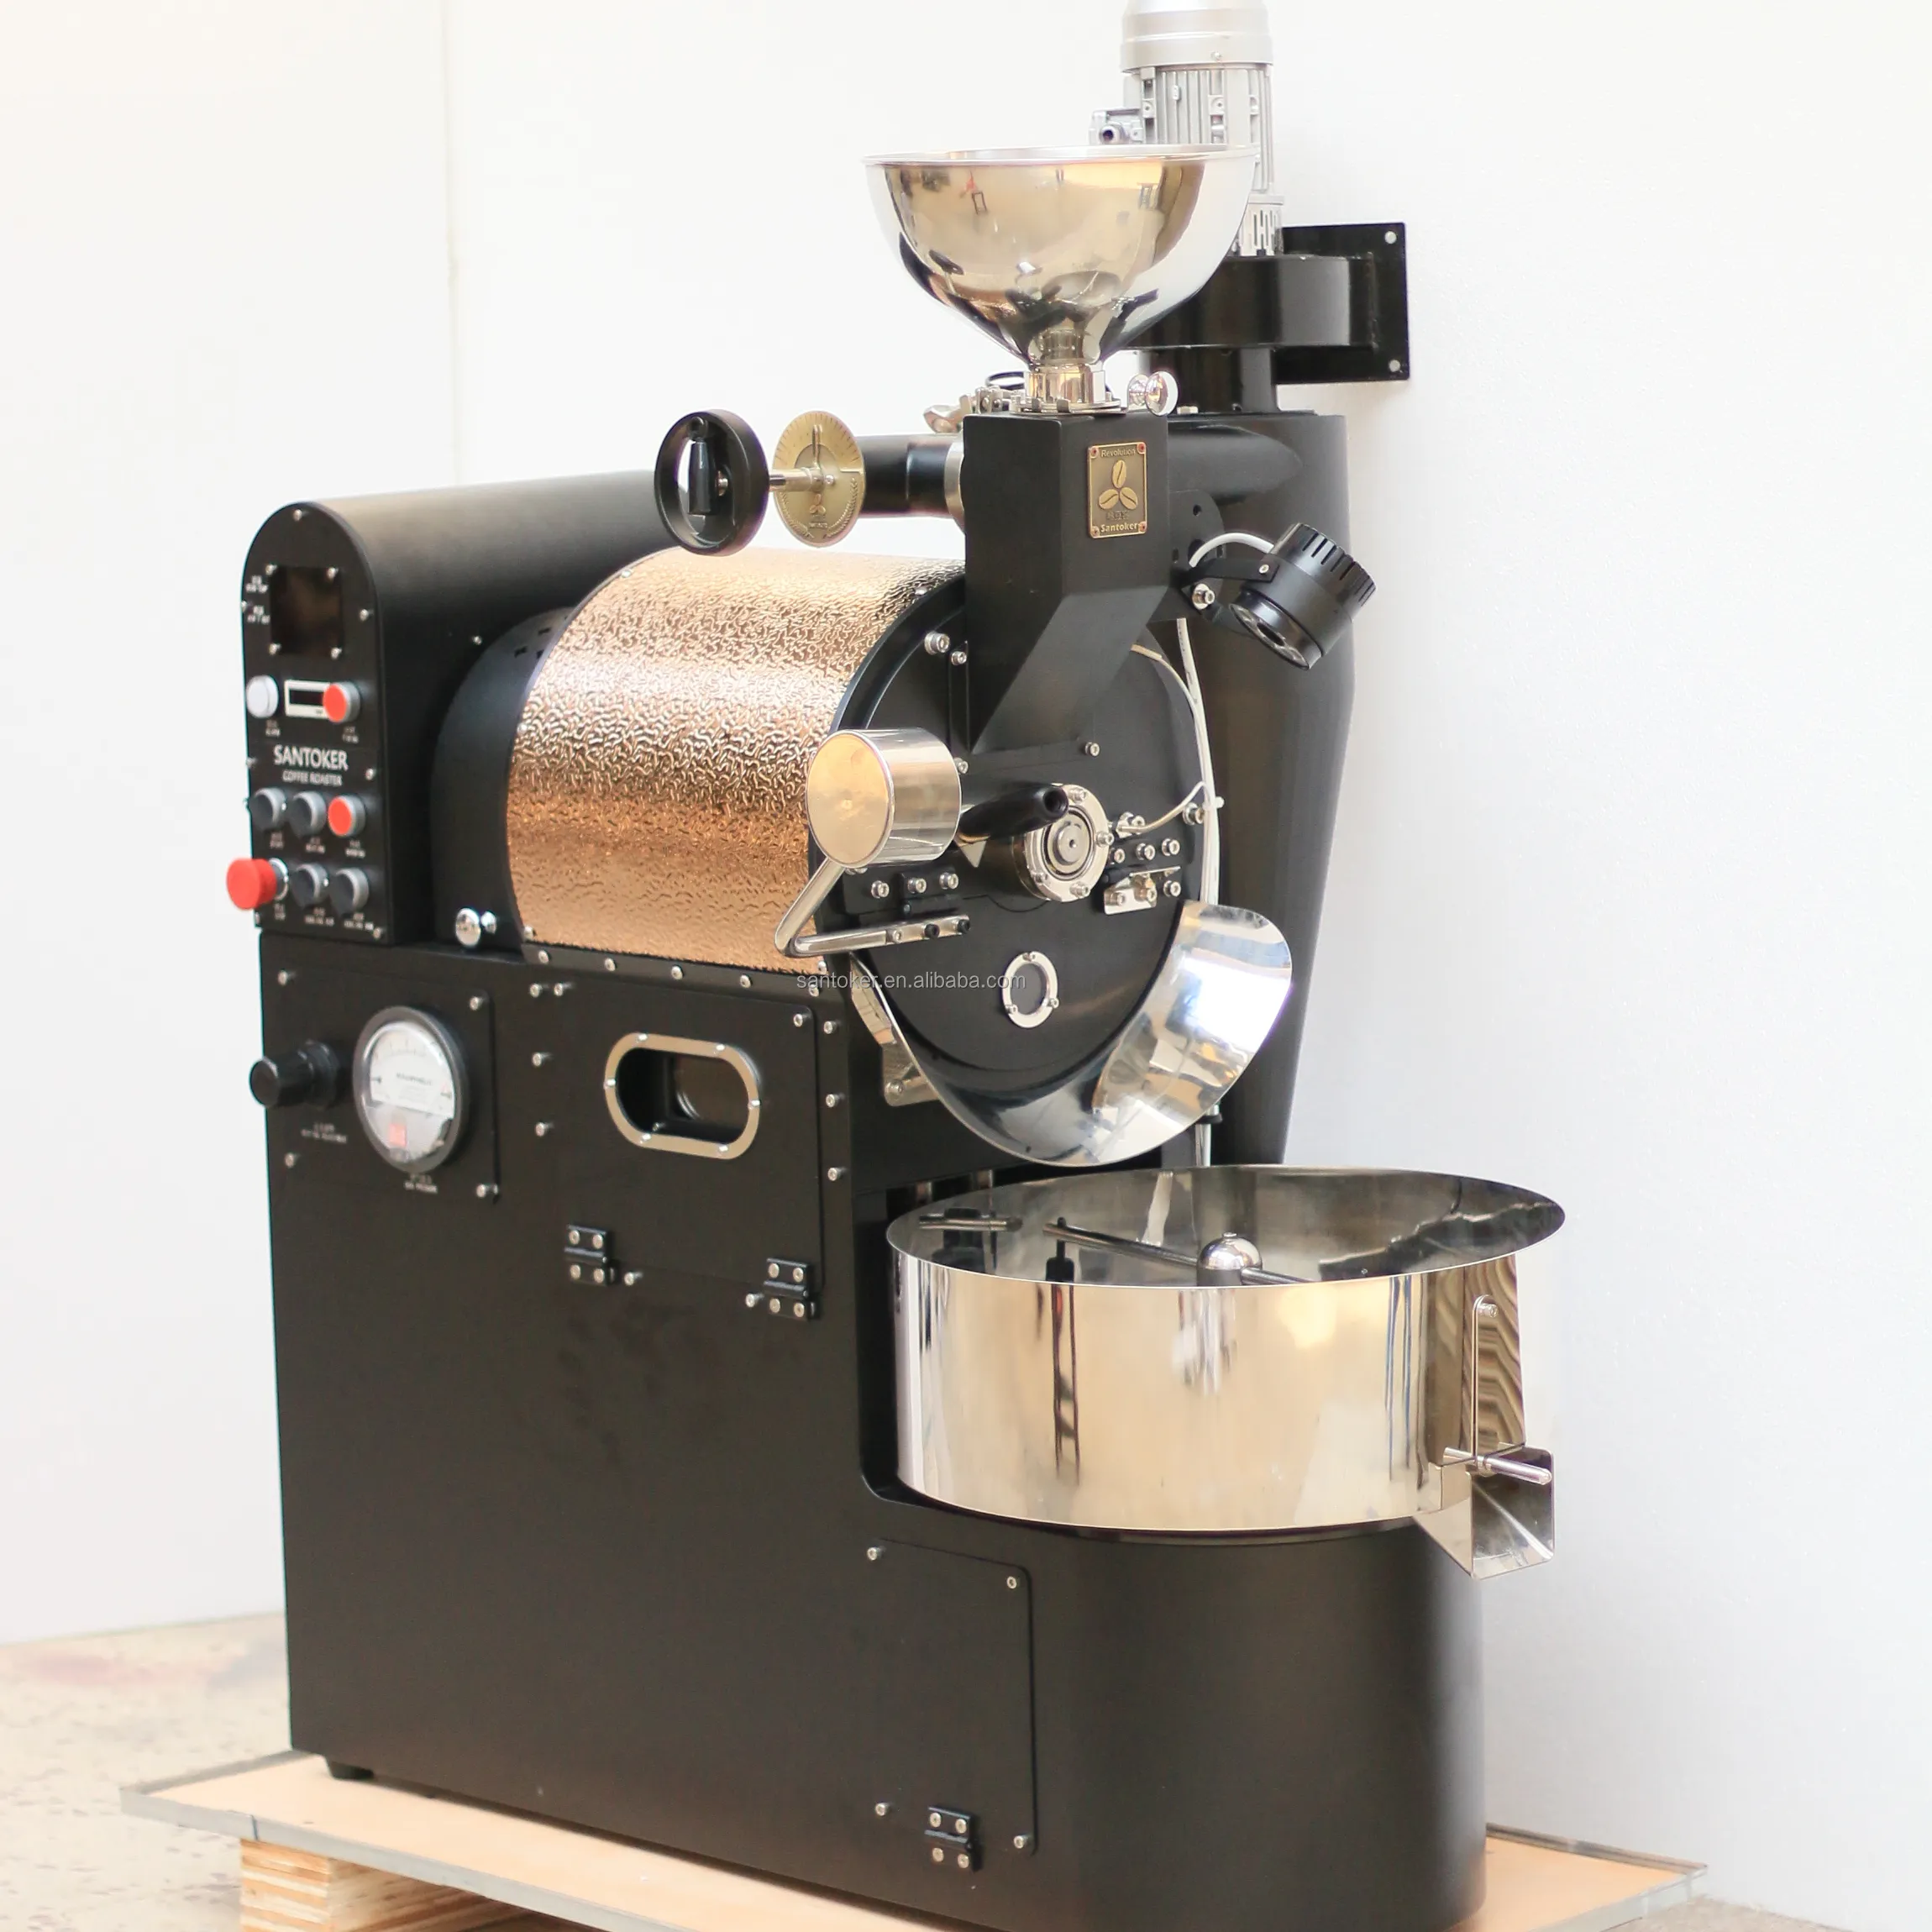 קפה לצליה SANTOKER R3 תעשייתי קפה צלייה מכונות 0.5-3 קילוגרם קפה לצליה